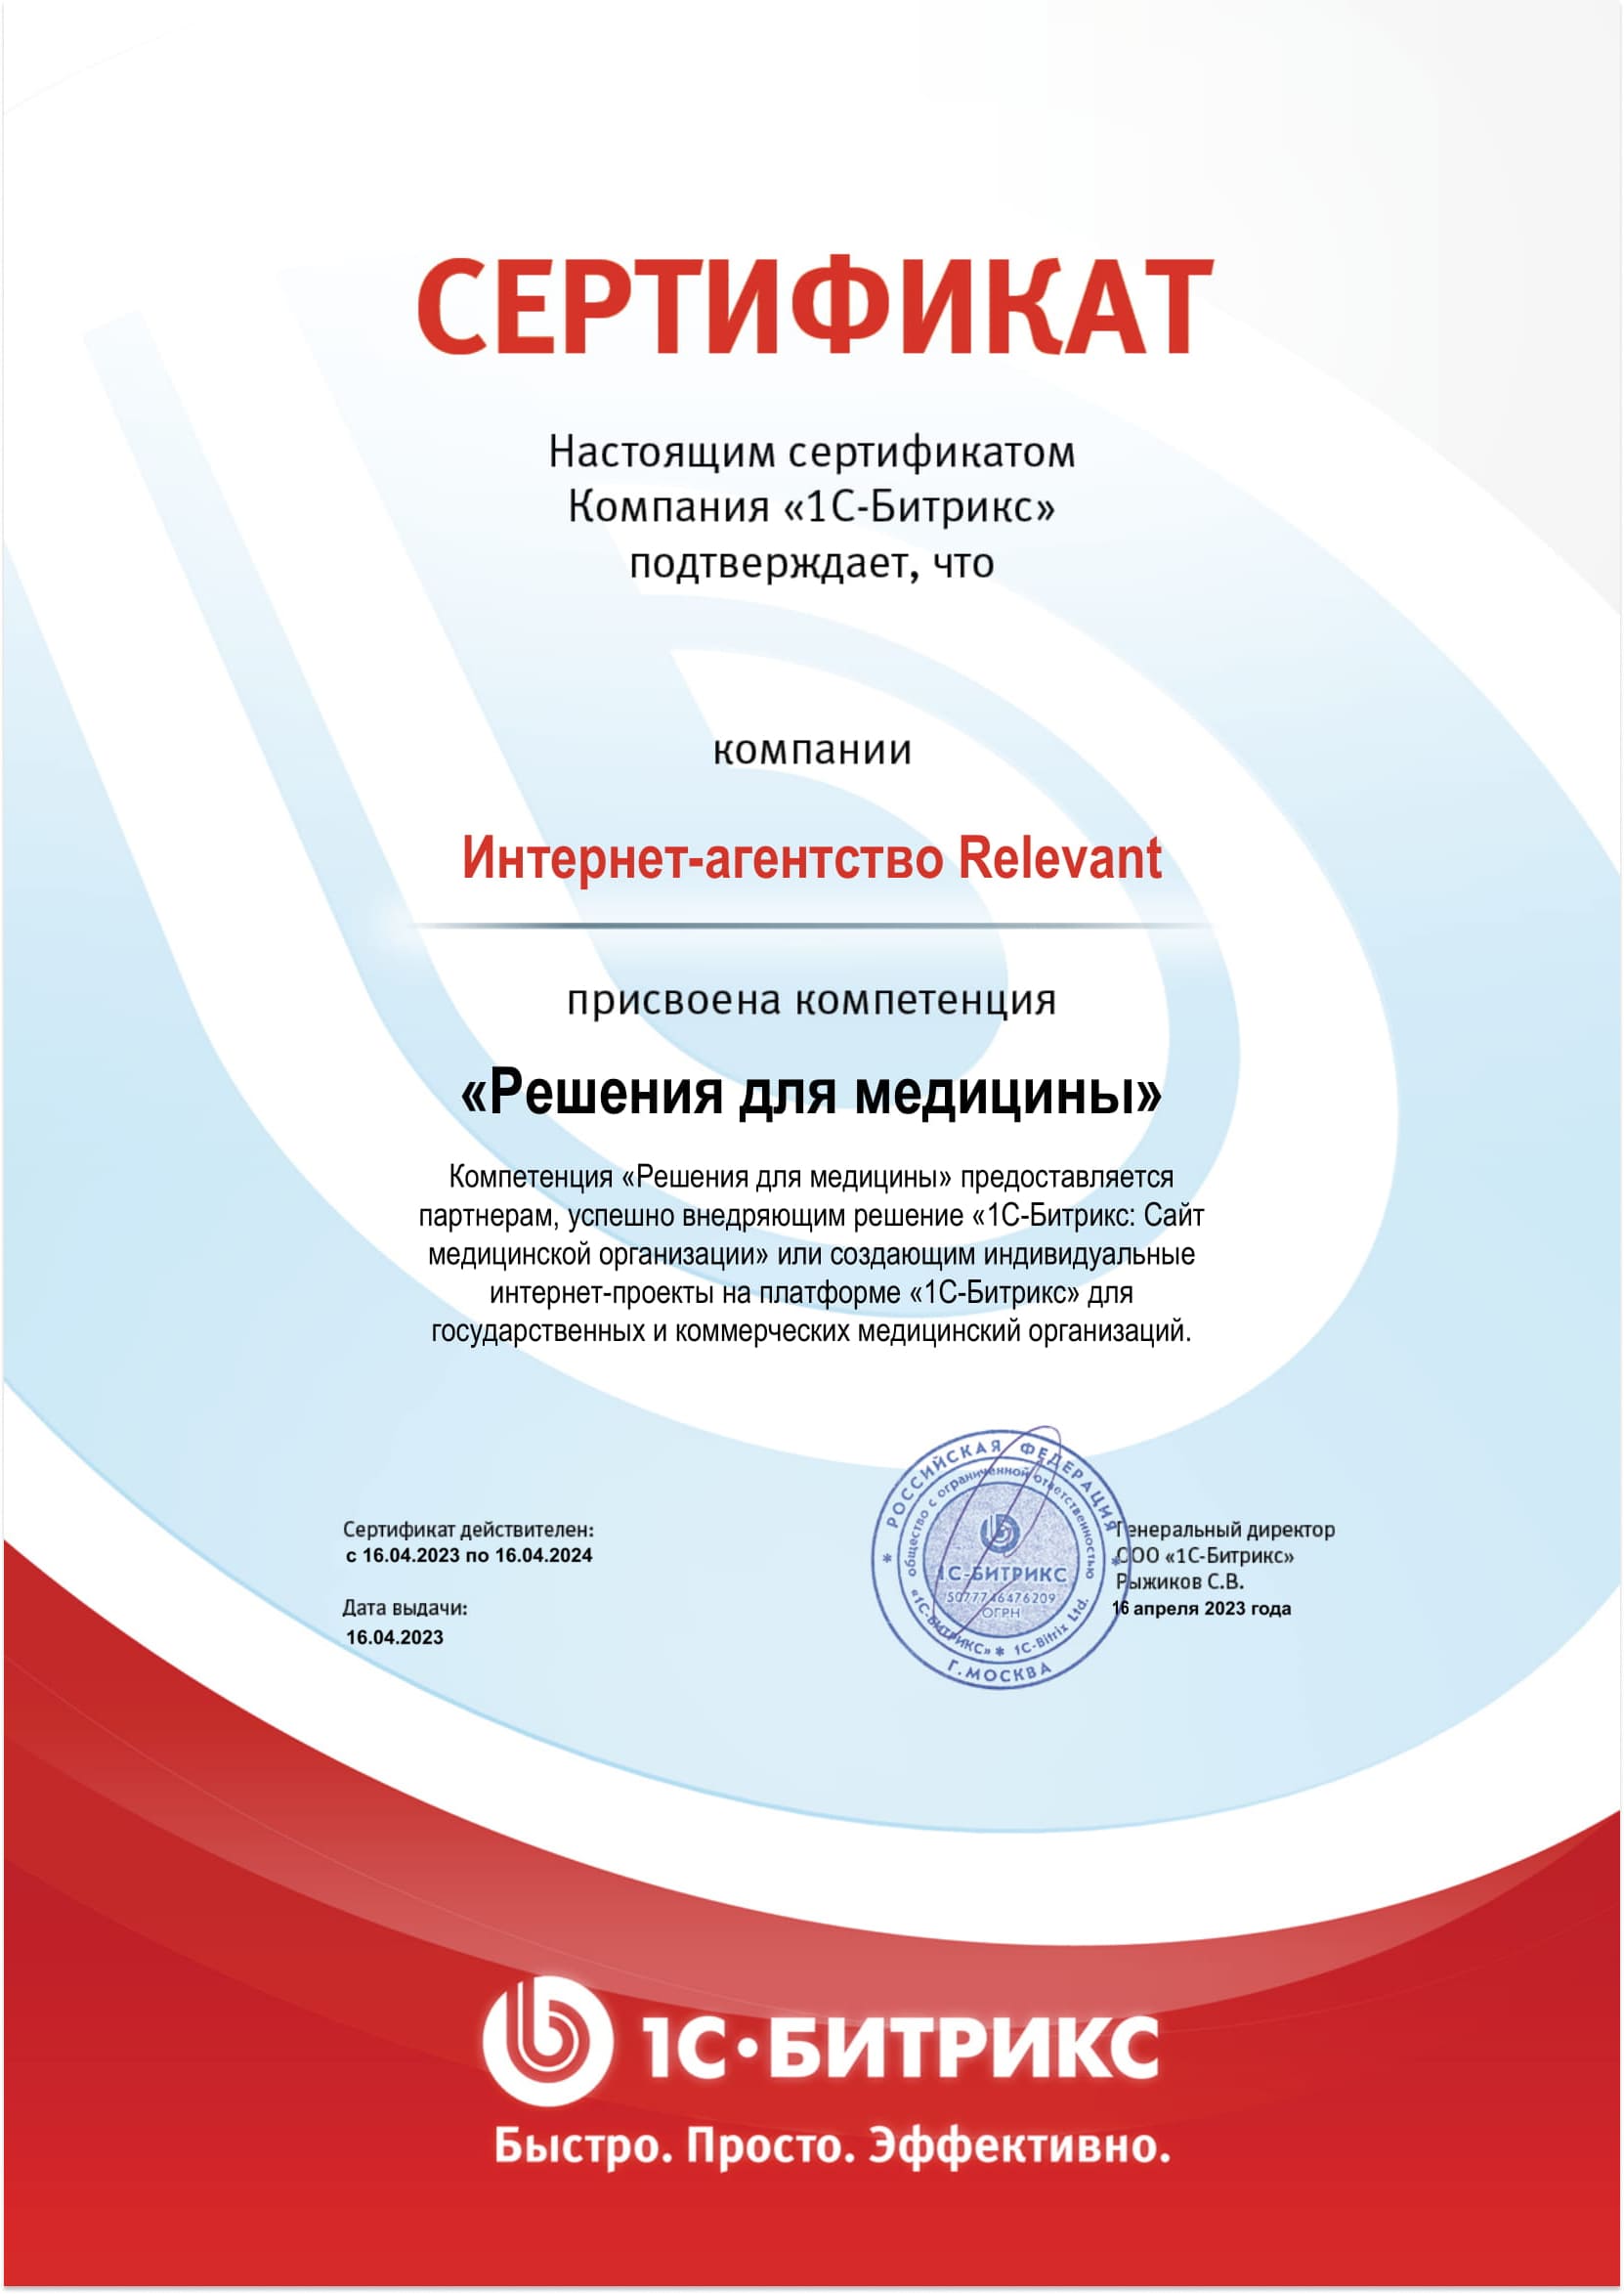 Сертификат о присвоении компетенции "Решения для медицины"